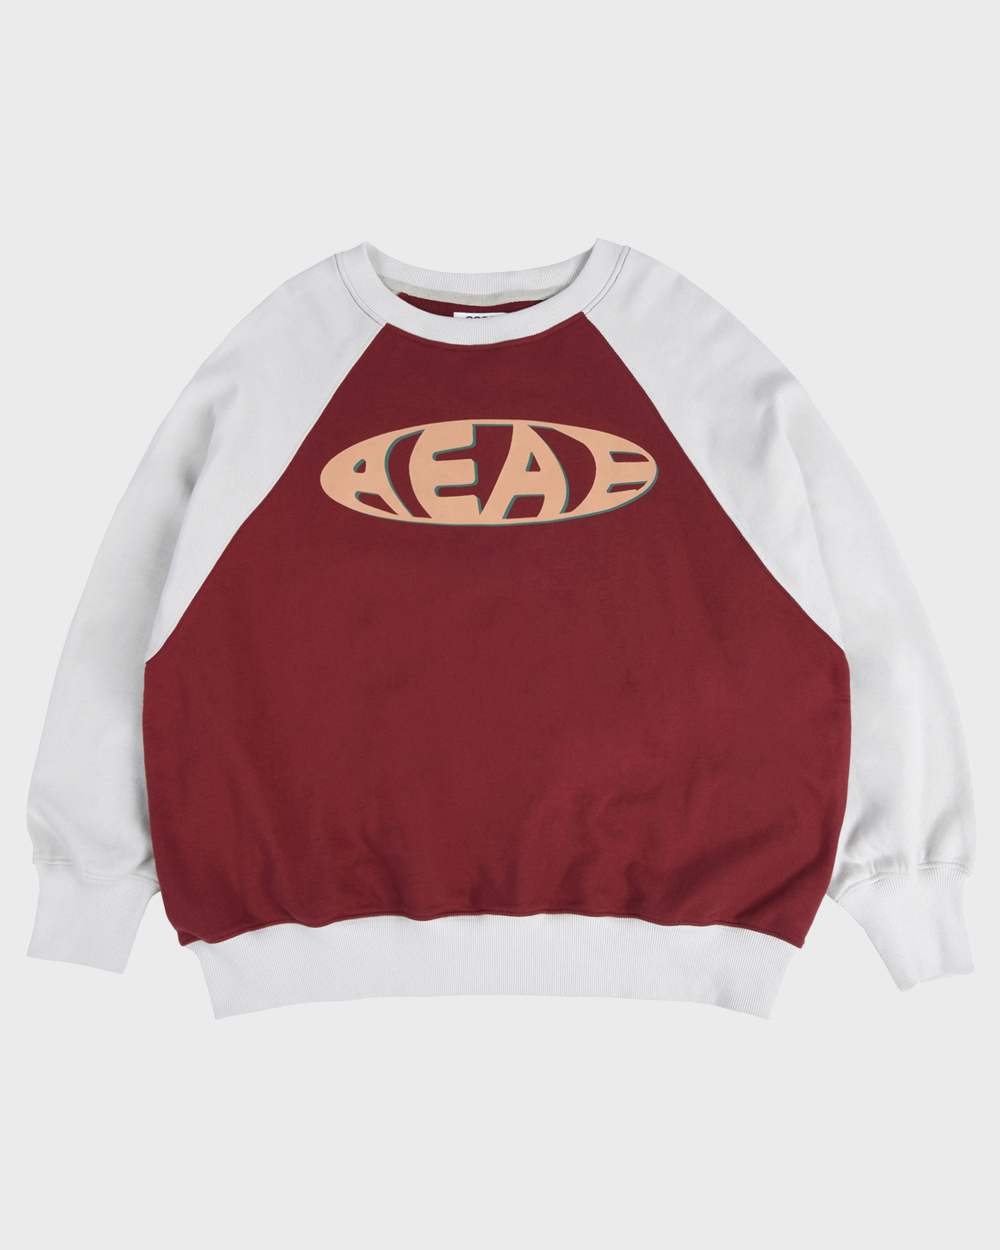 aeae Vintage Logo Raglan Sweatshirts (Beige/Burgundy)